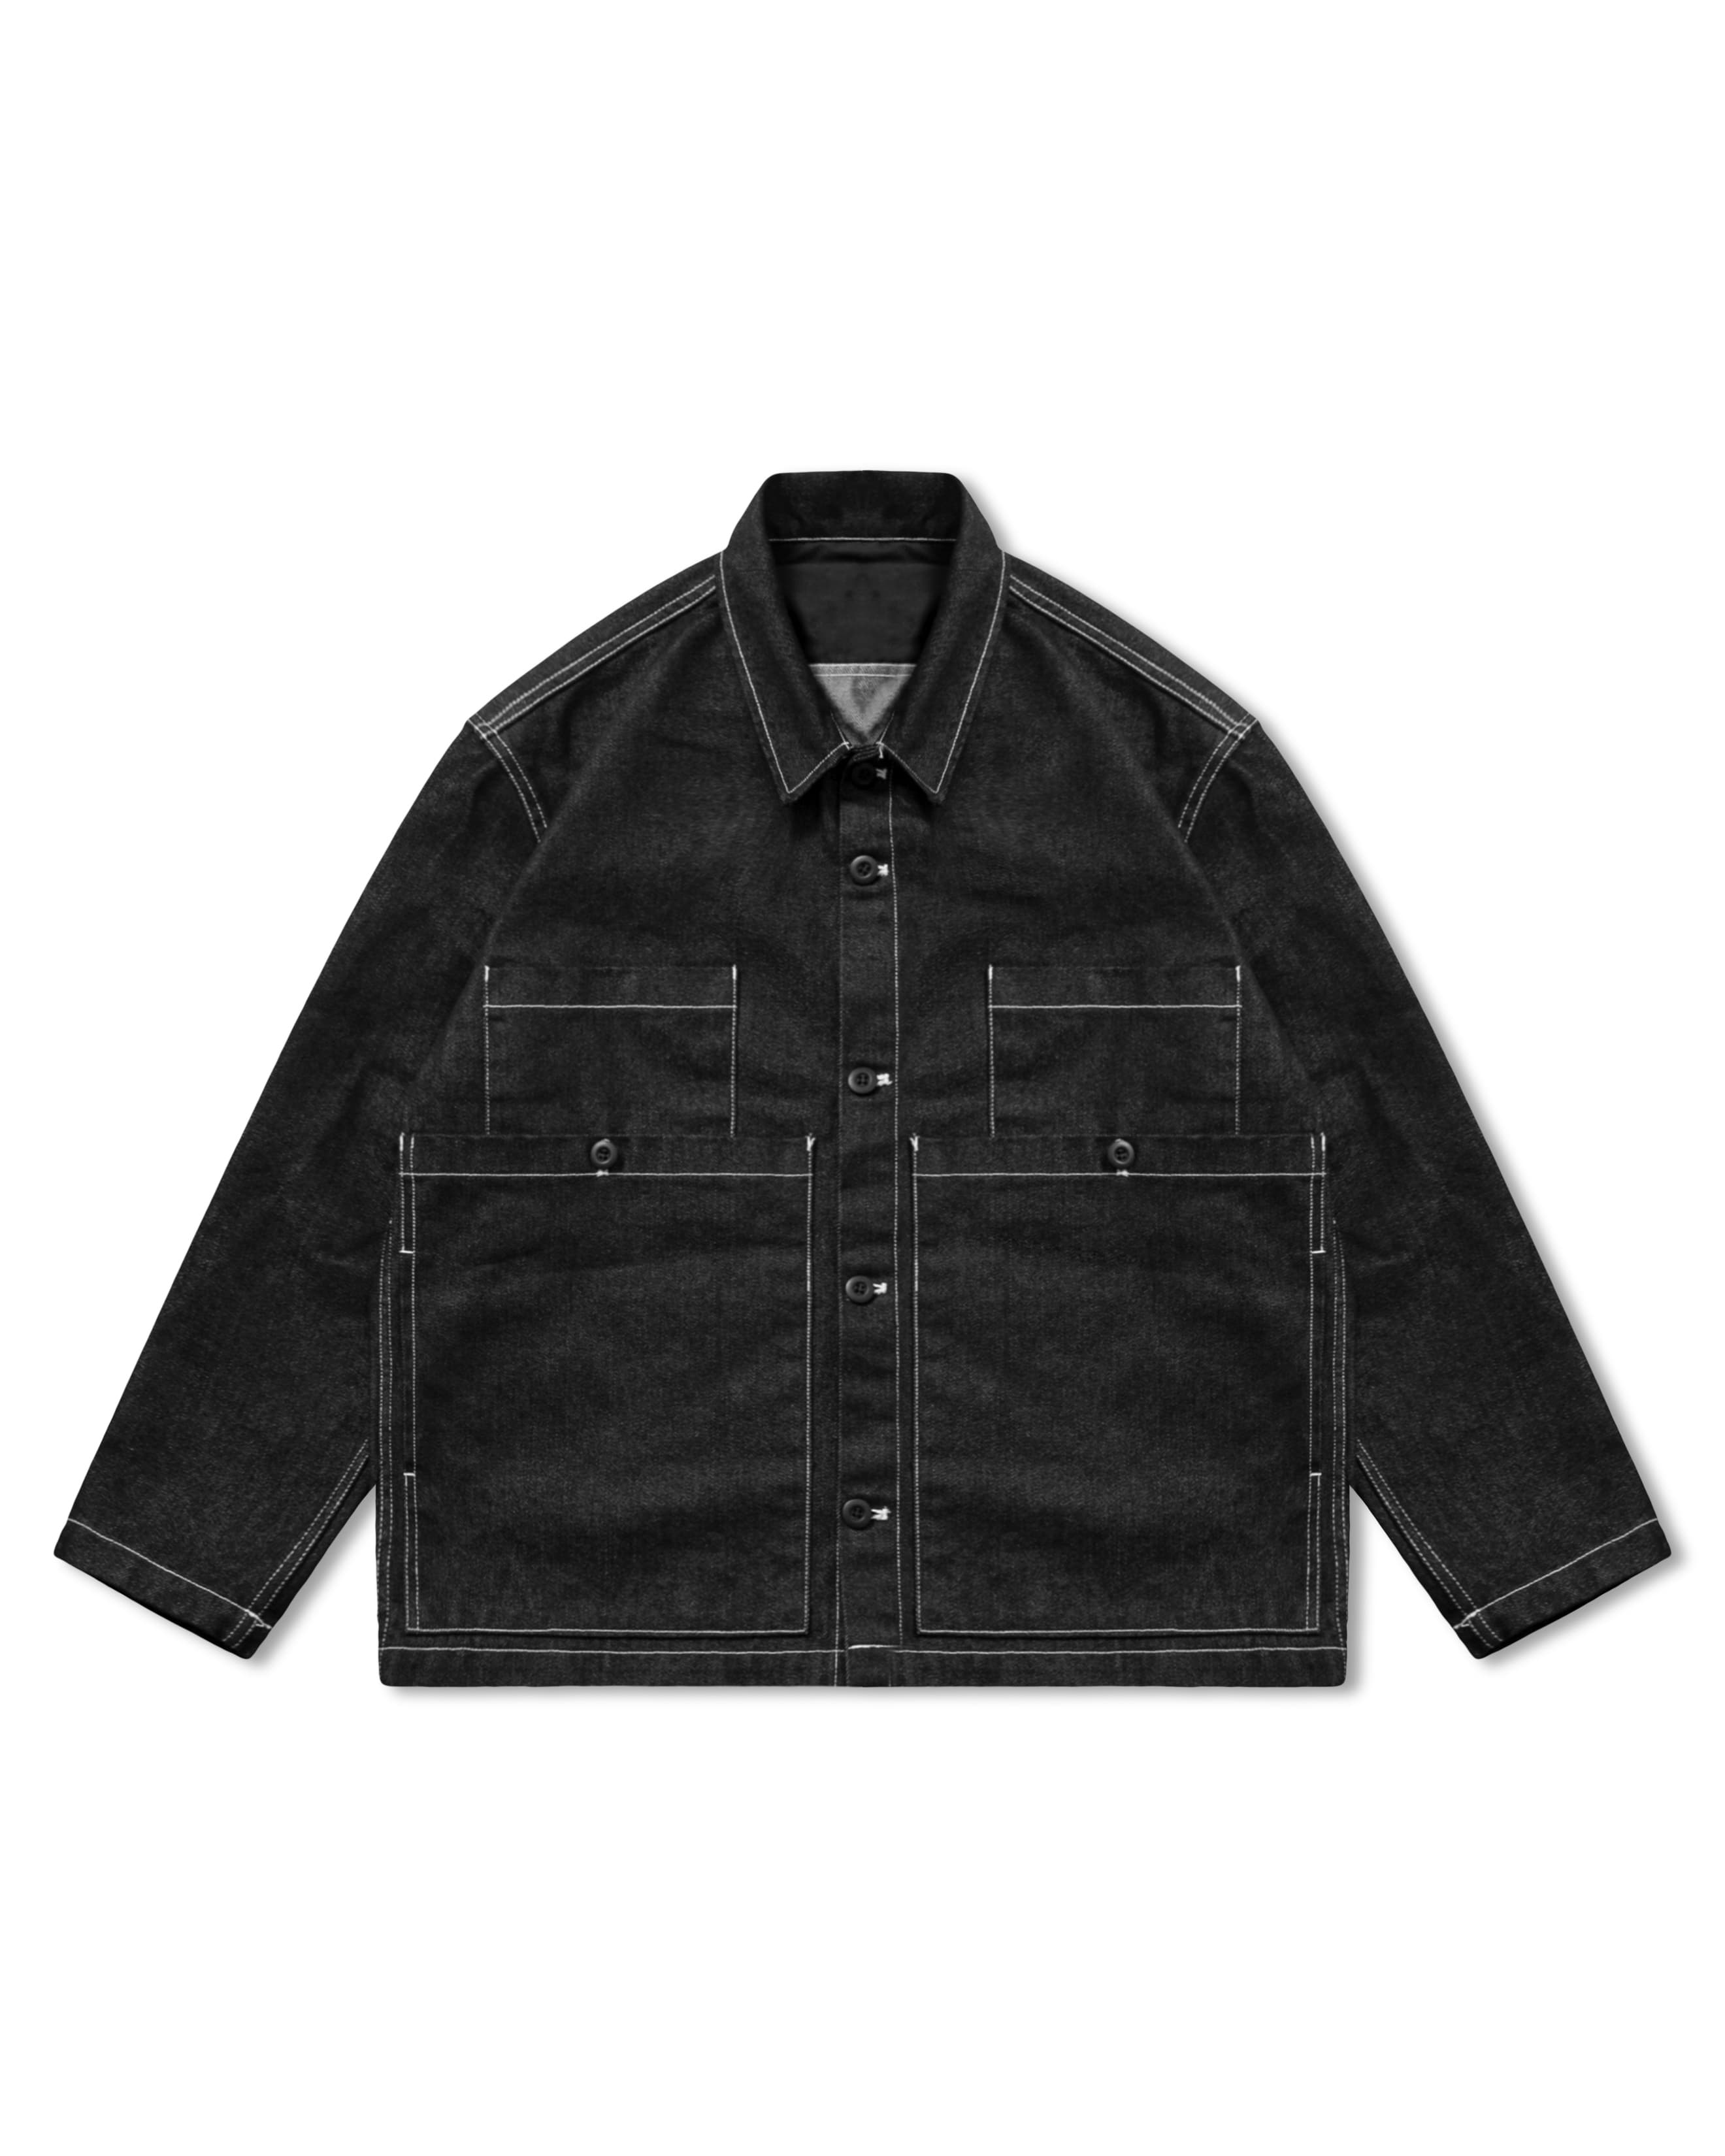 Stitch Work Denim Jacket - Black